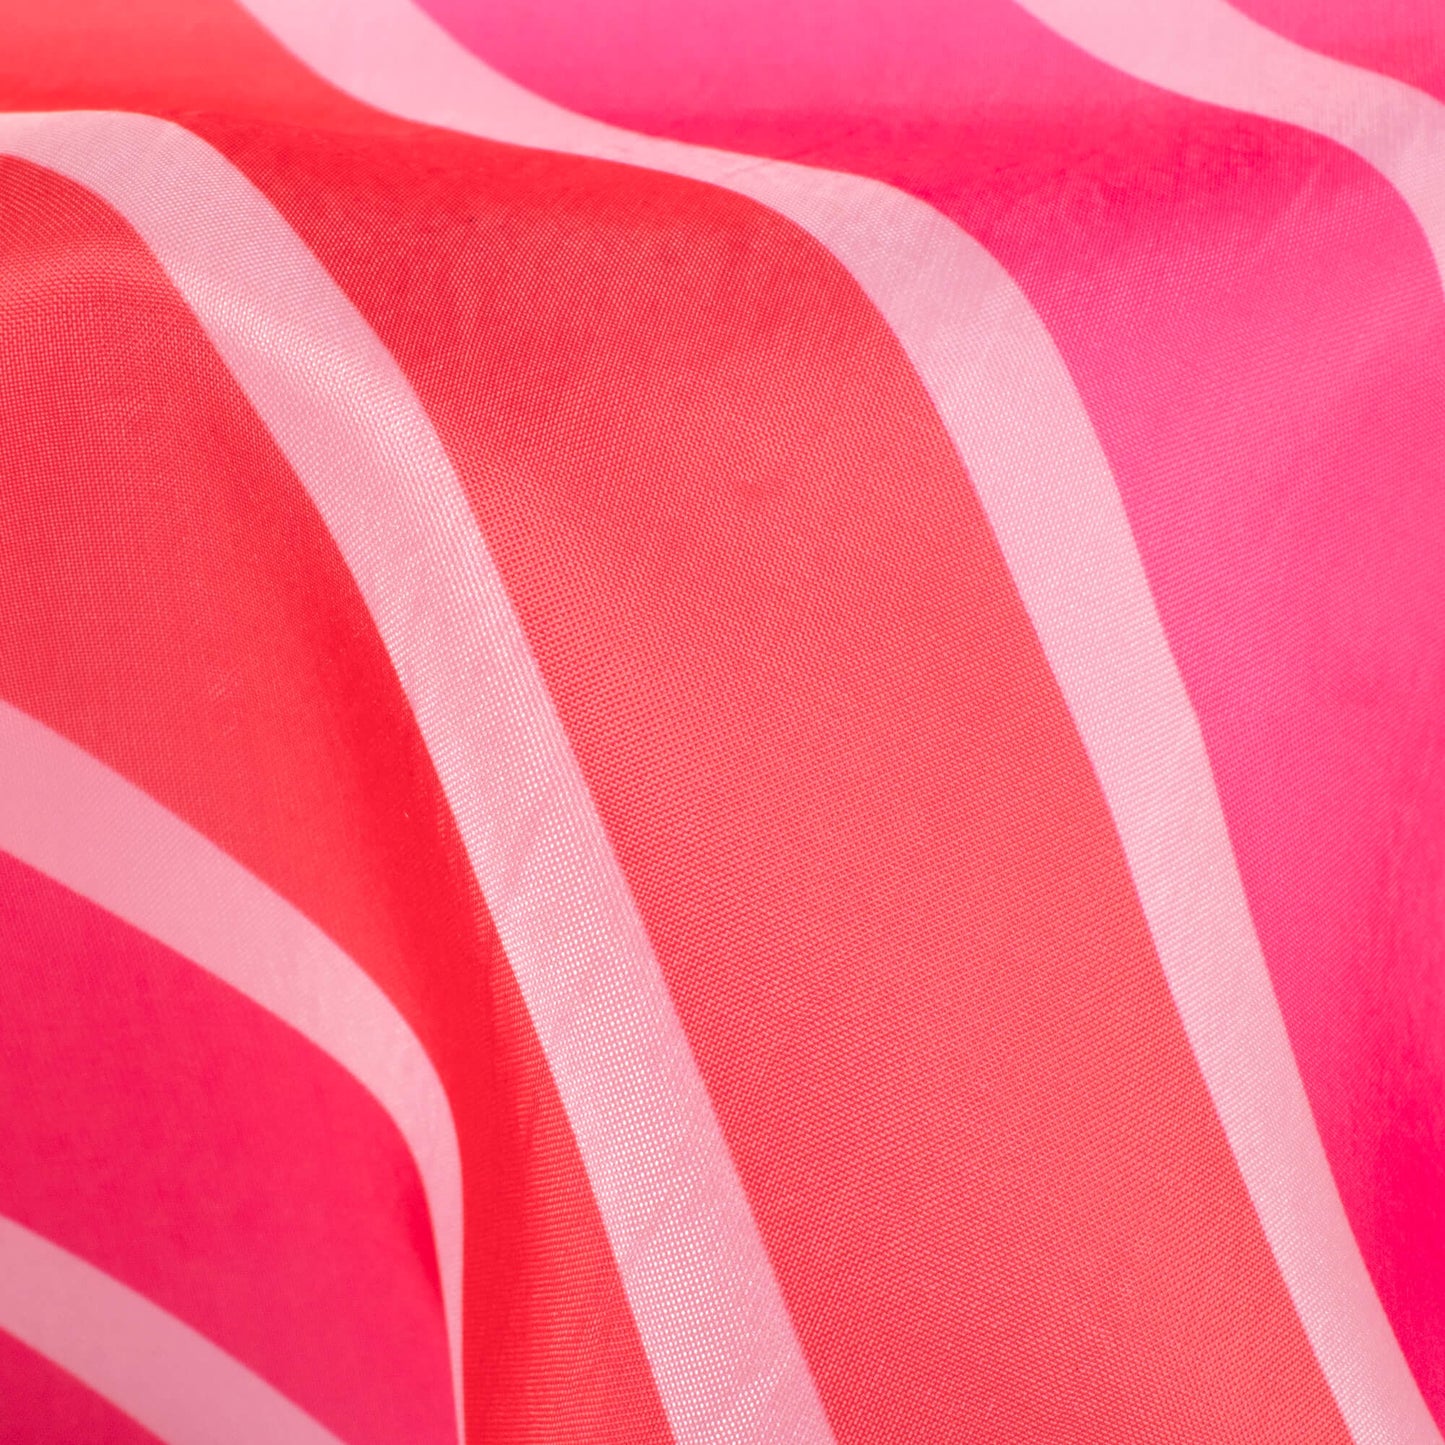 Hot Pink And Red Bandhani Pattern Digital Print Organza Satin Fabric